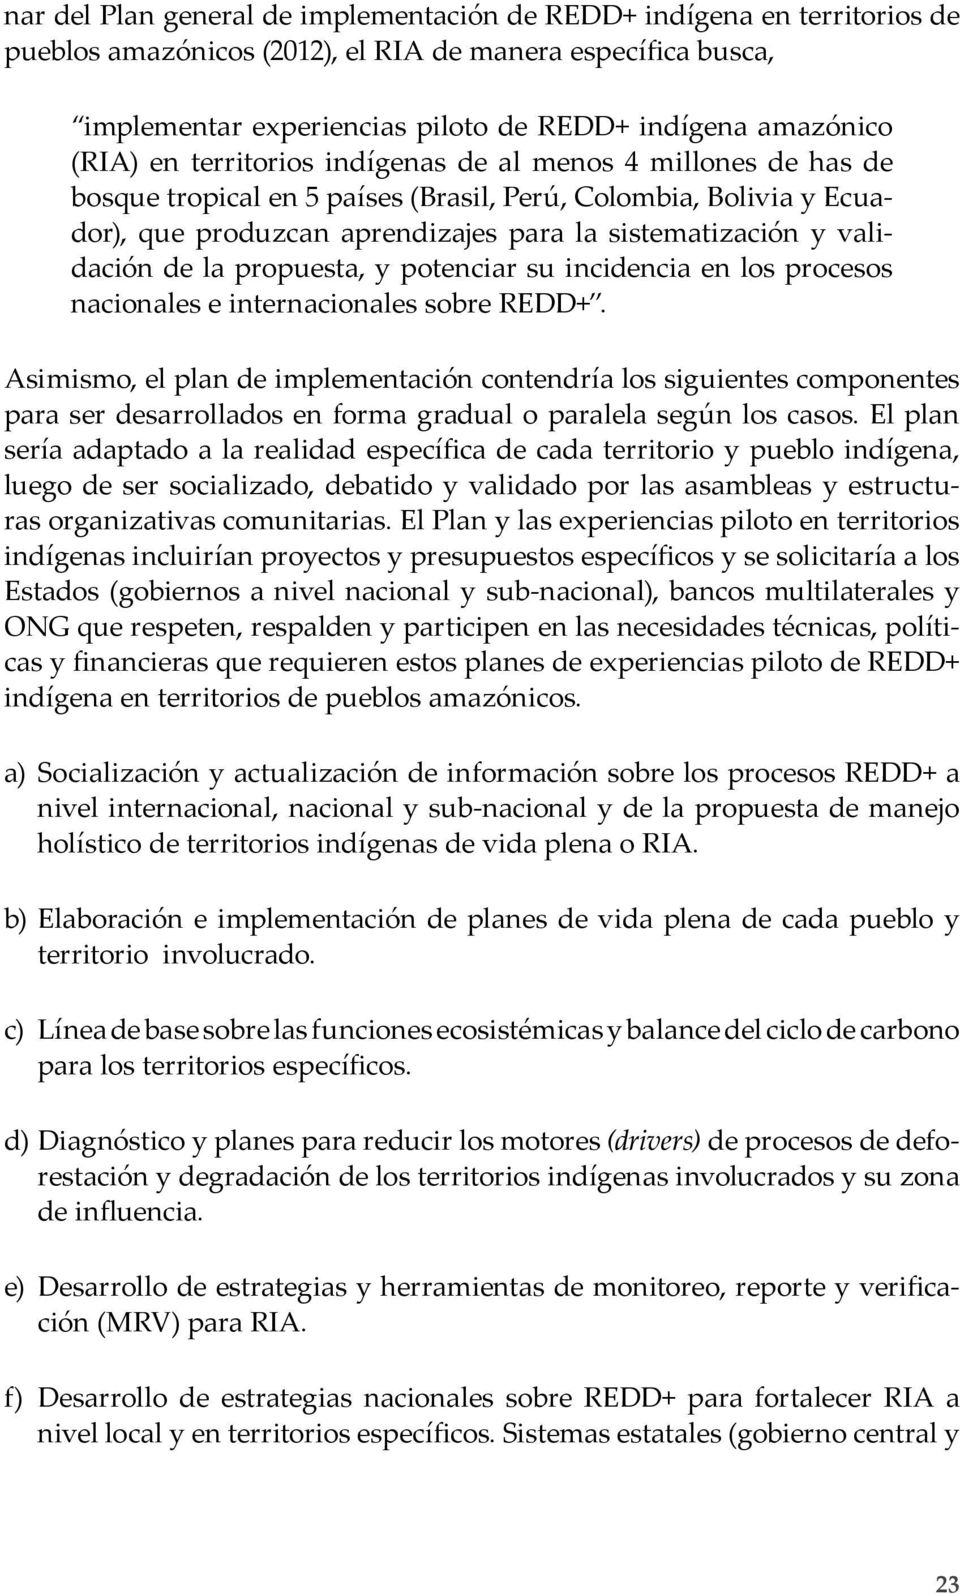 validación de la propuesta, y potenciar su incidencia en los procesos nacionales e internacionales sobre REDD+.